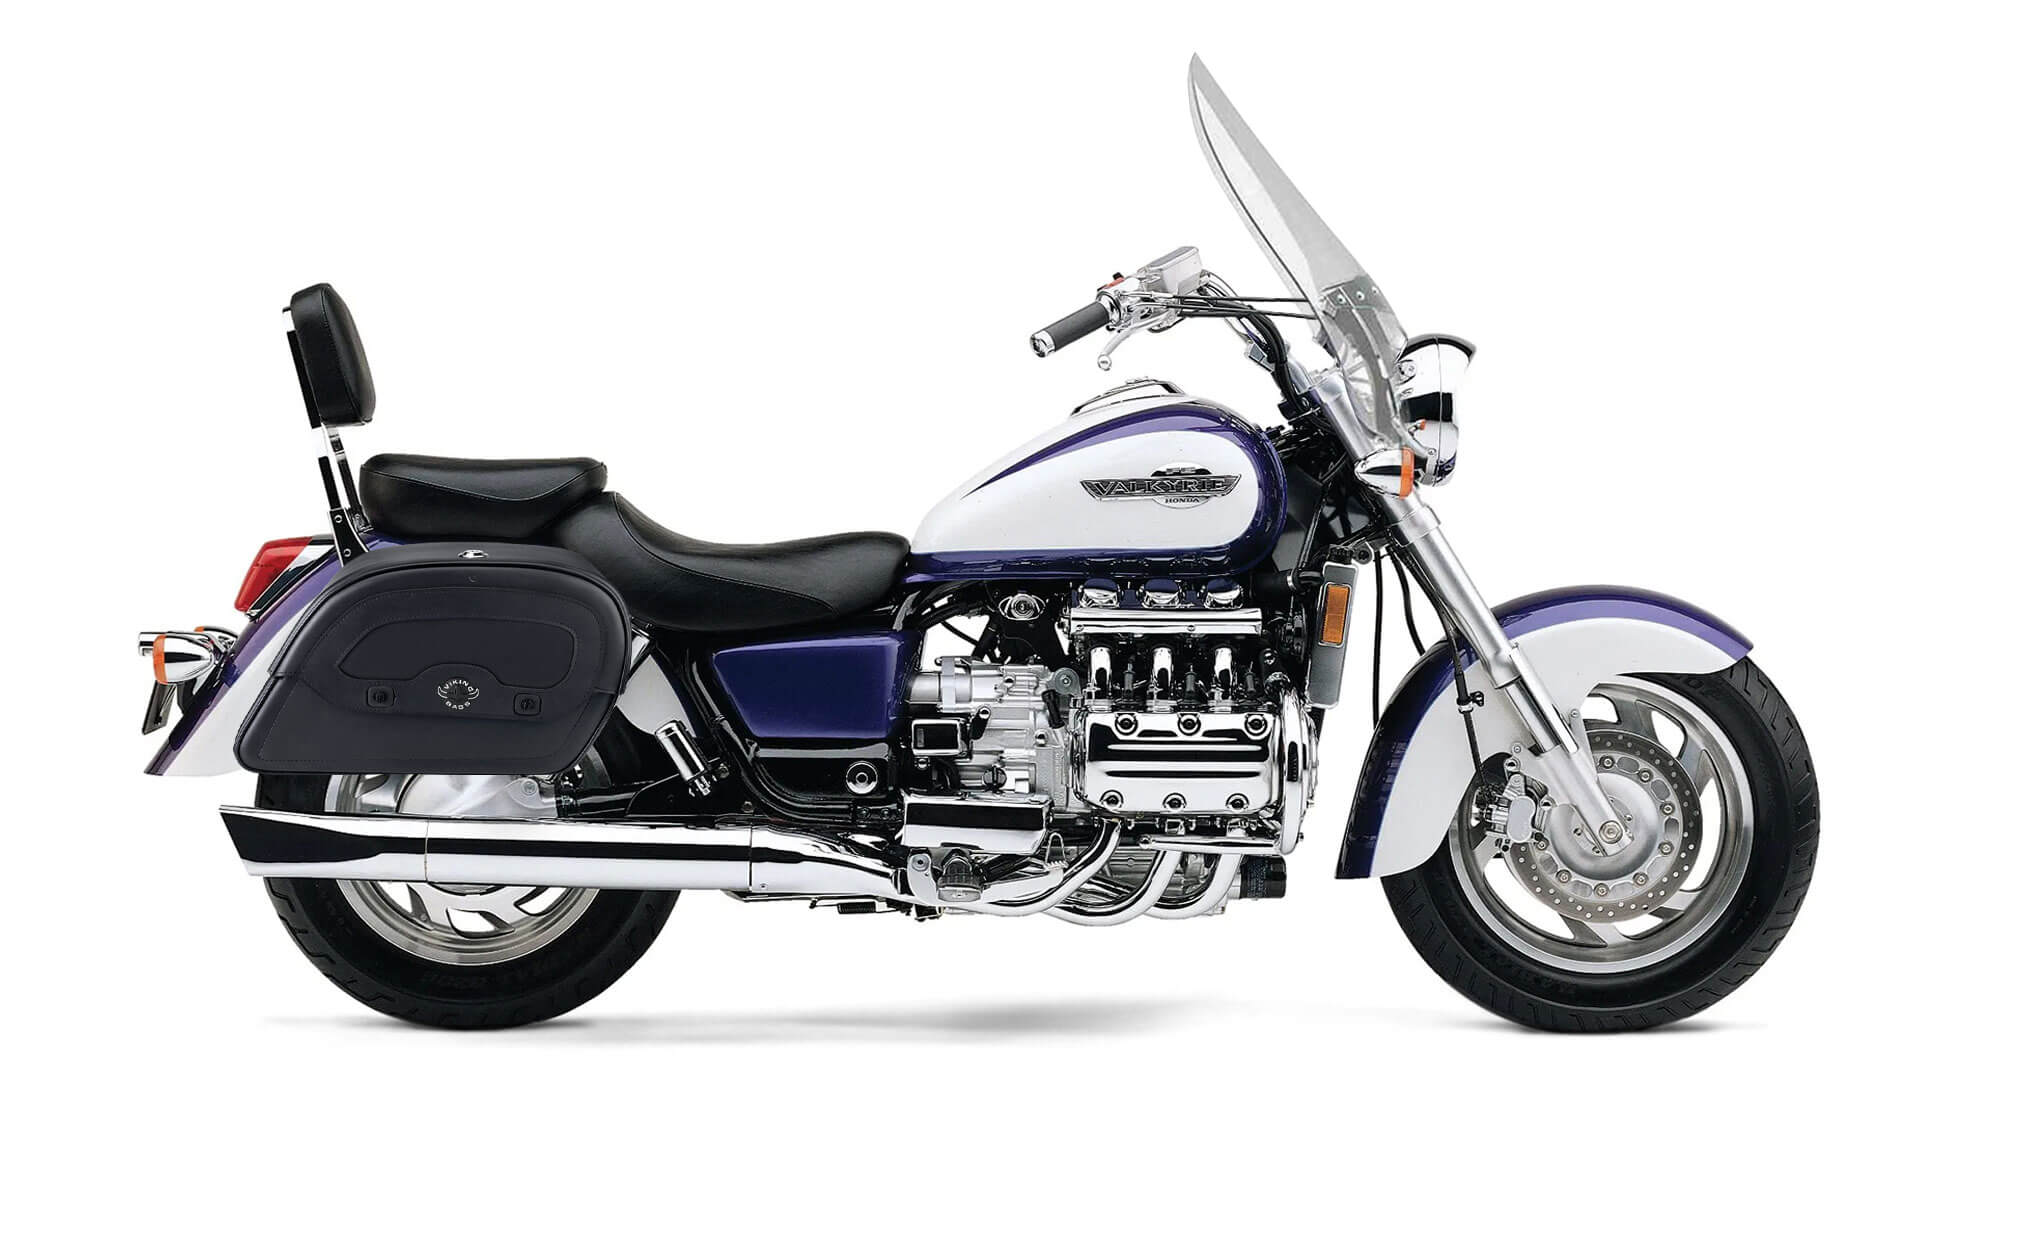 Viking Warrior Large 1500 Honda Valkyrie Tourer Leather Motorcycle Saddlebags on Bike Photo @expand